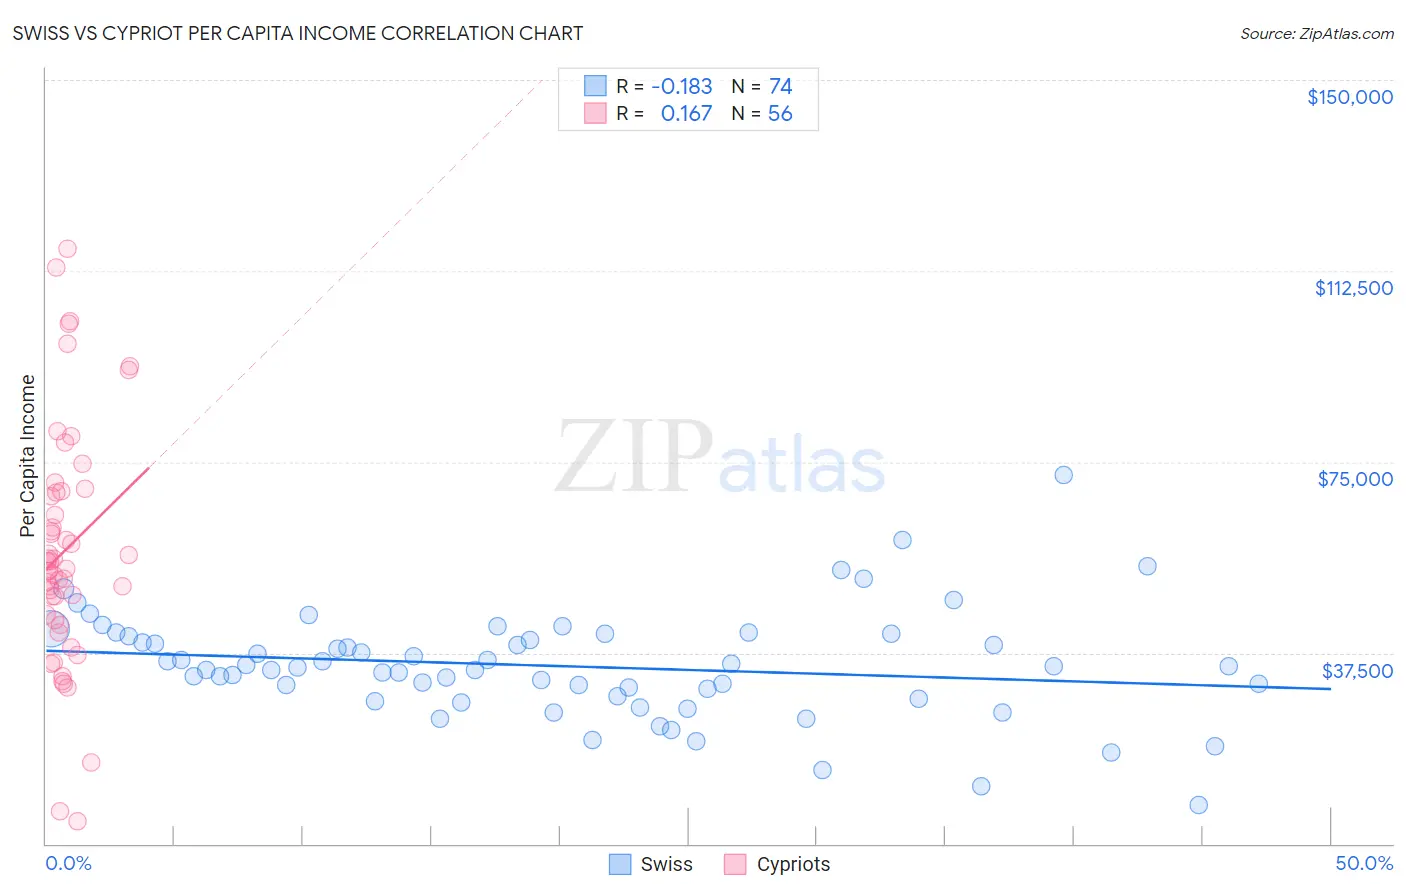 Swiss vs Cypriot Per Capita Income